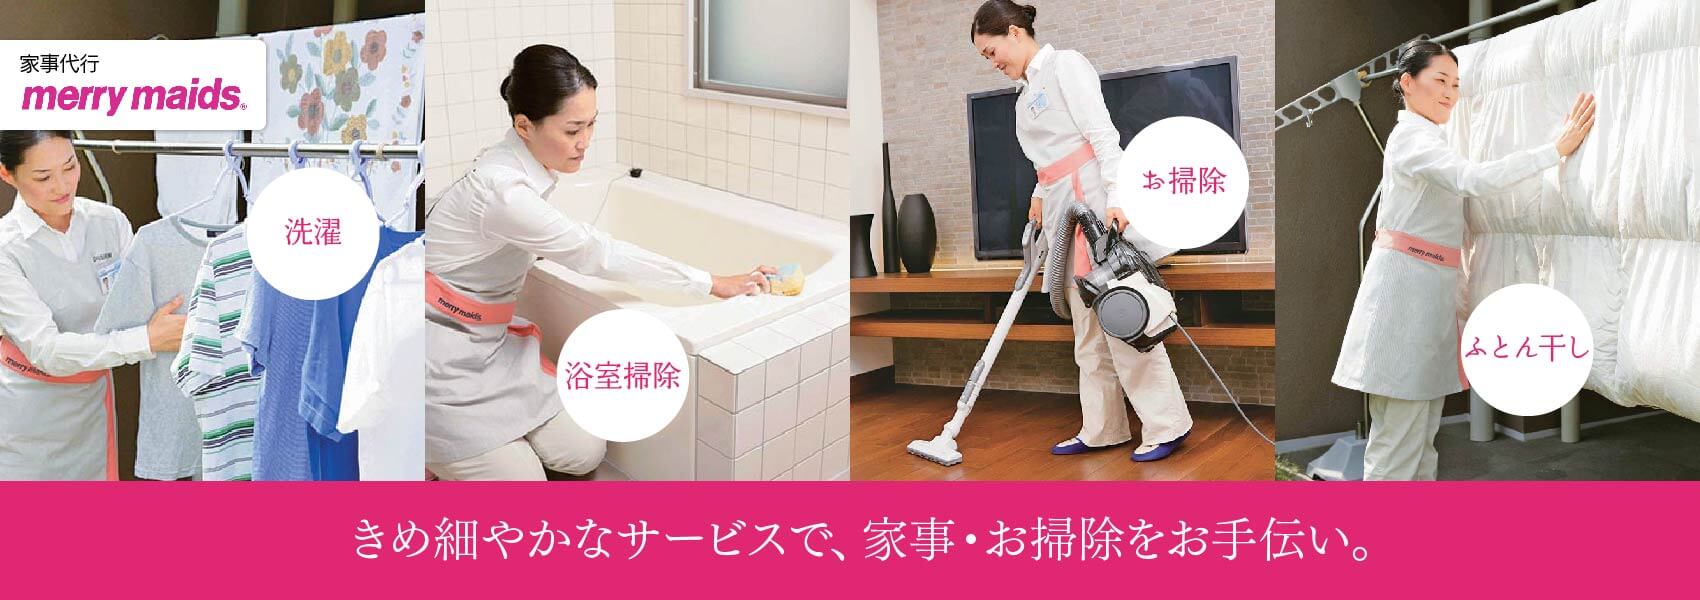 きめ細やかなサービスで、家事・お掃除をお手伝い。